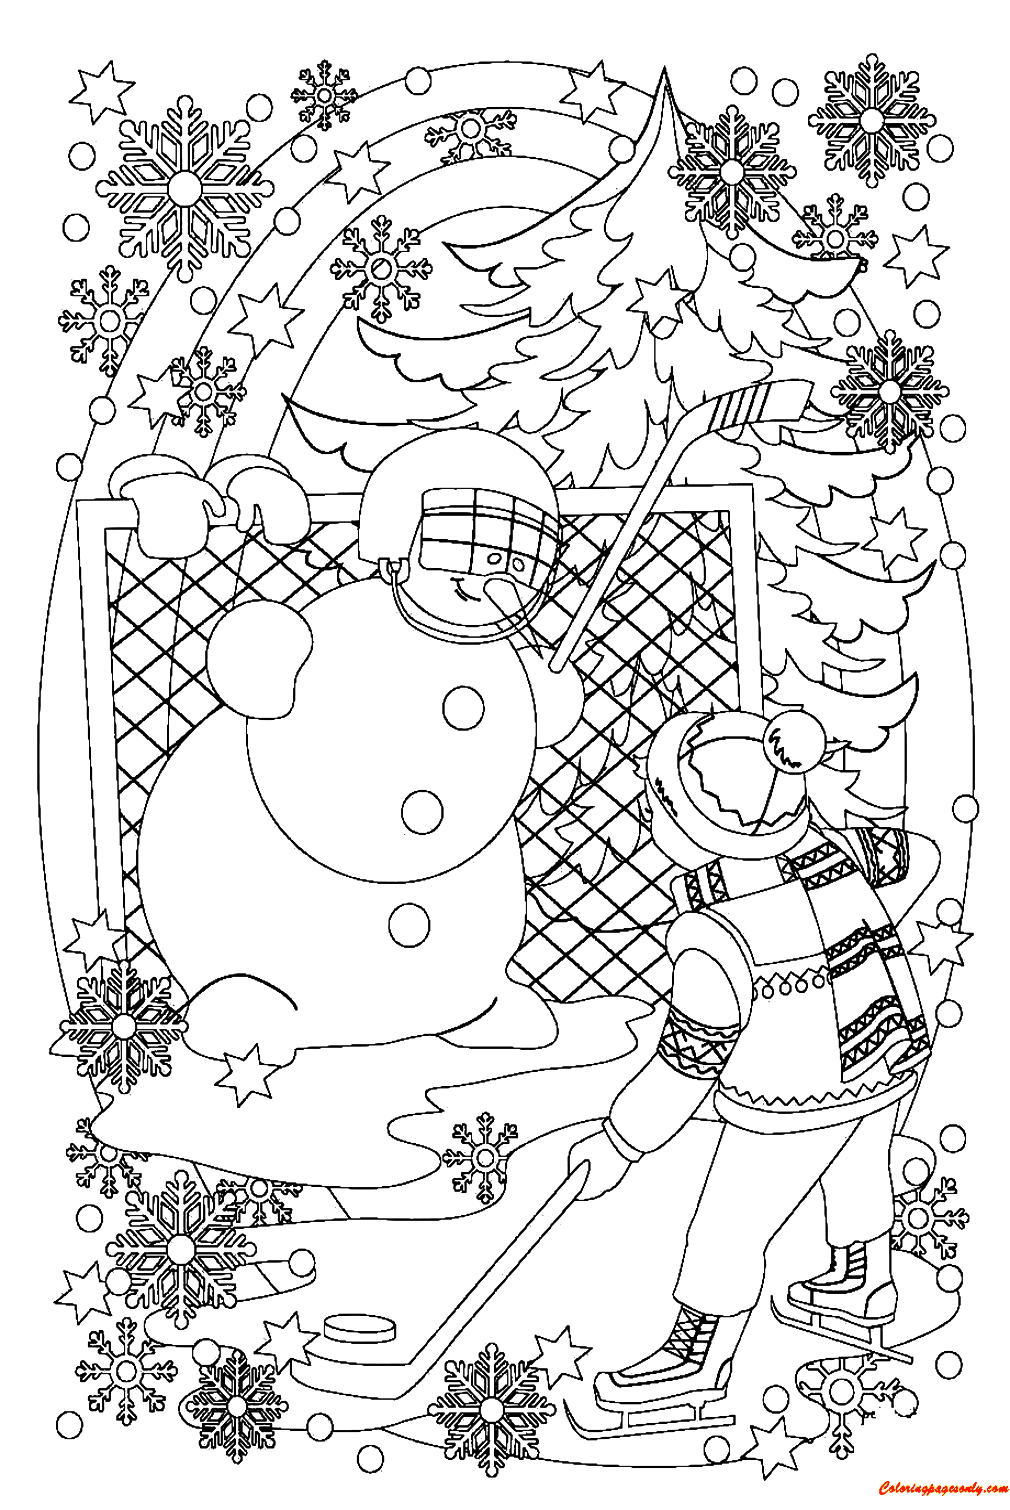 Снеговик и мальчик играют в хоккей в «Снежке» из «Снеговика»